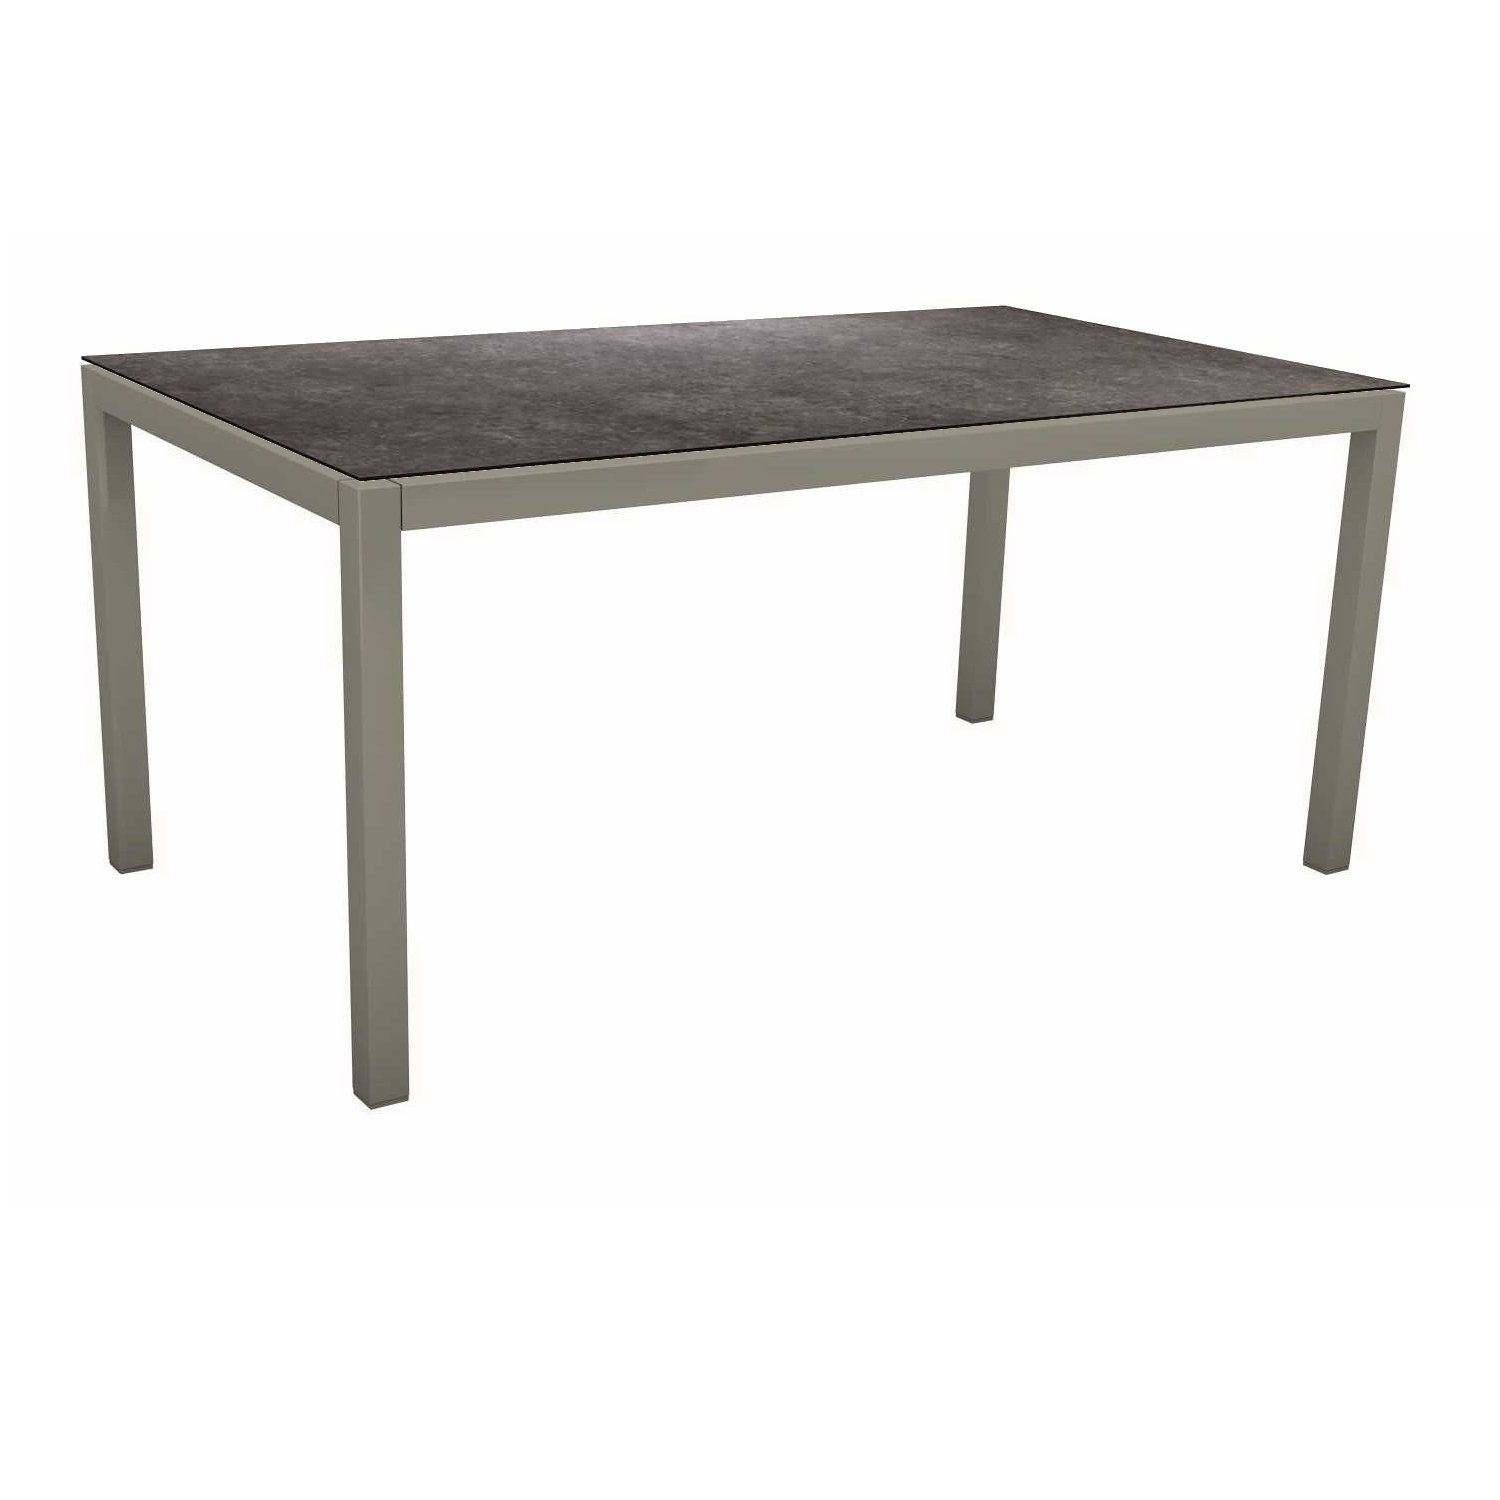 Stern Tischsystem, Gestell Aluminium graphit, Tischplatte HPL Vintage grau, 130x80 cm